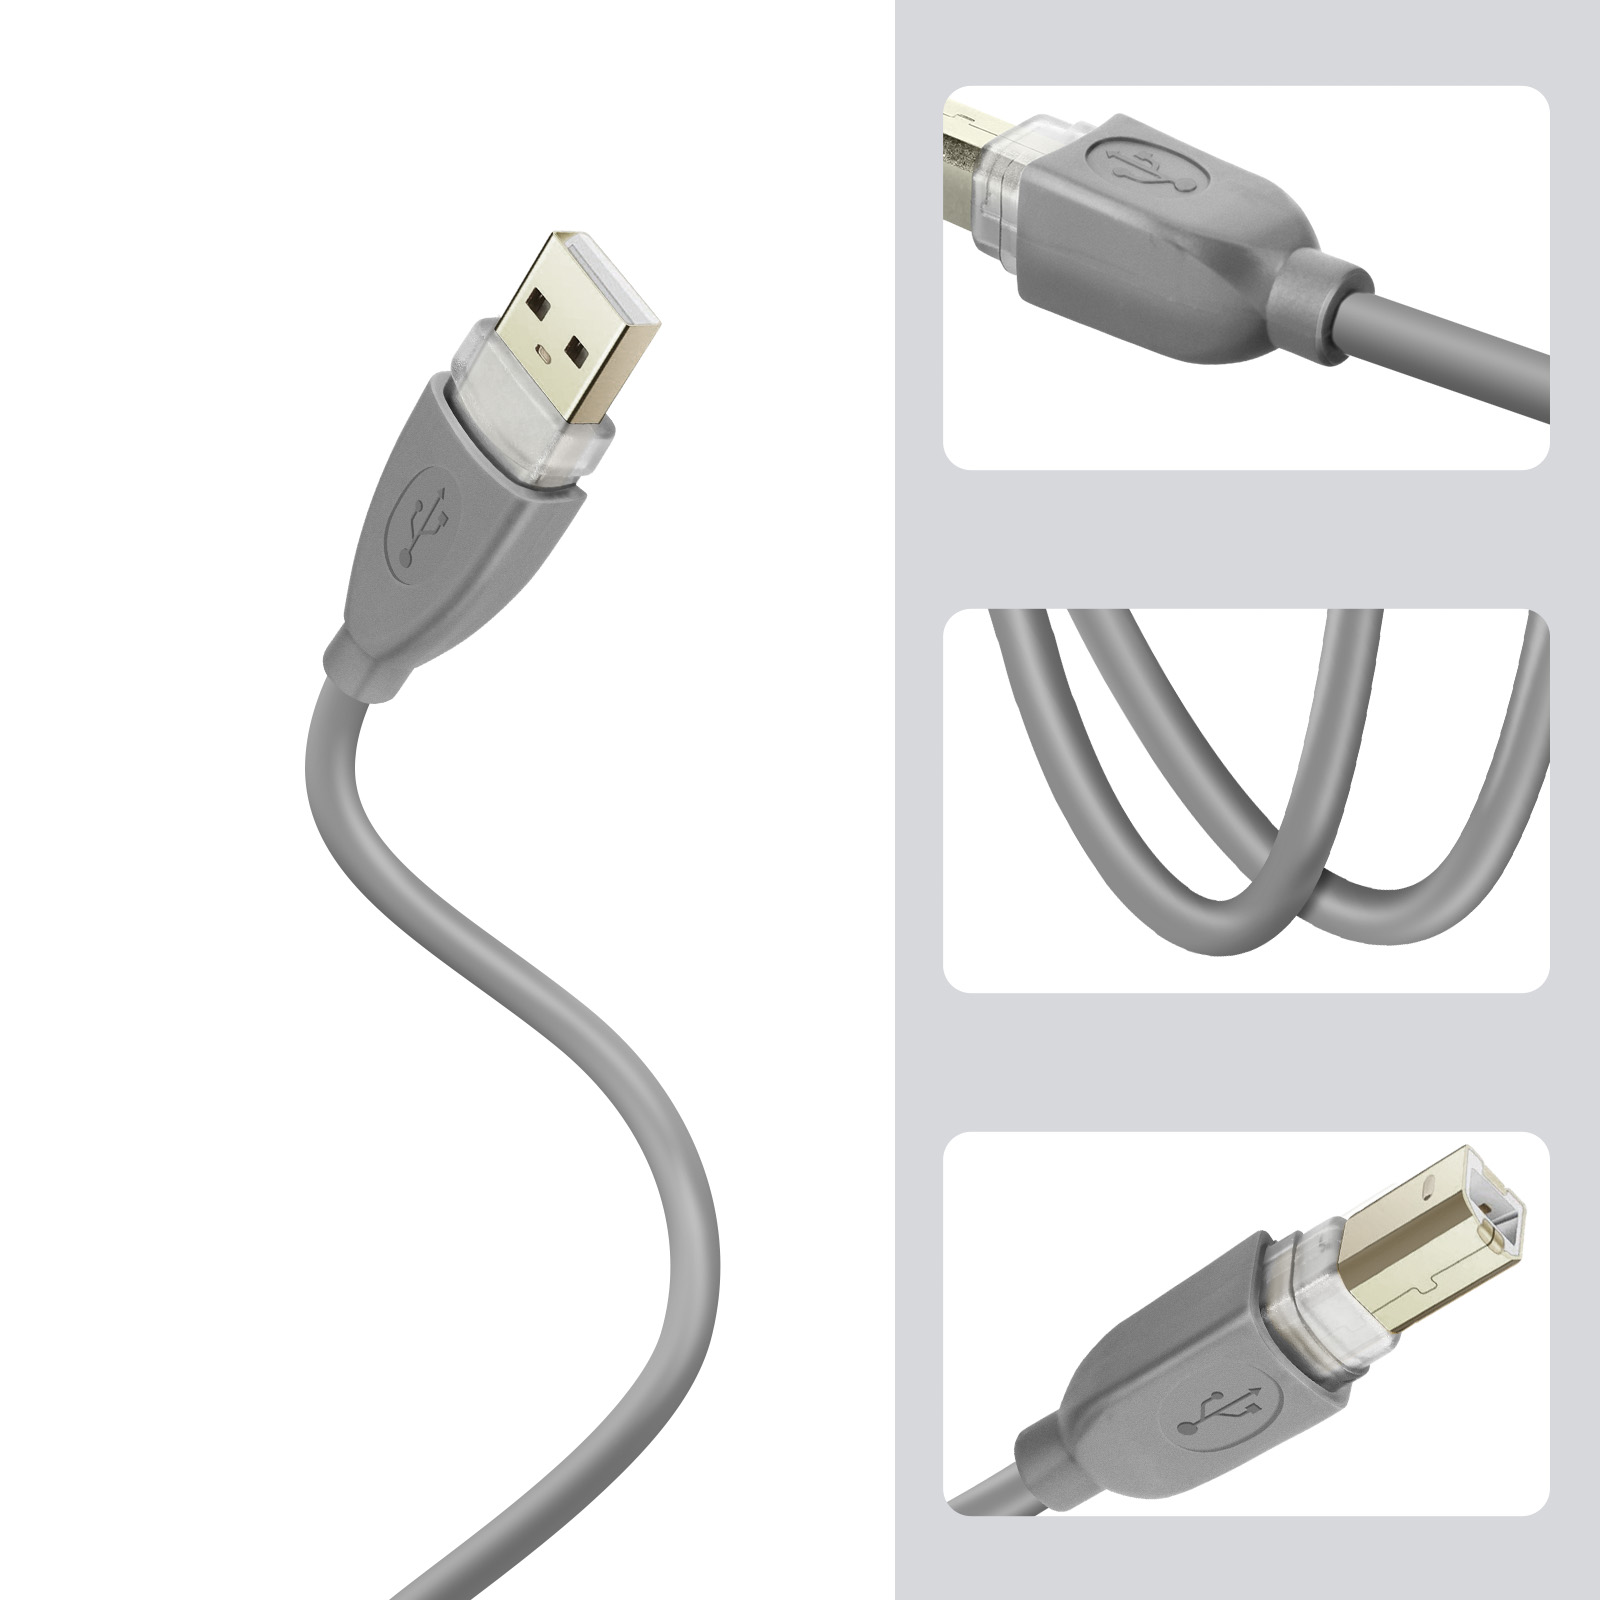 Câble USB 2.0 A vers USB B Coudé à Gauche Mâle / Mâle pour imprimante - 3 m  - Noir - AvenueBoutique